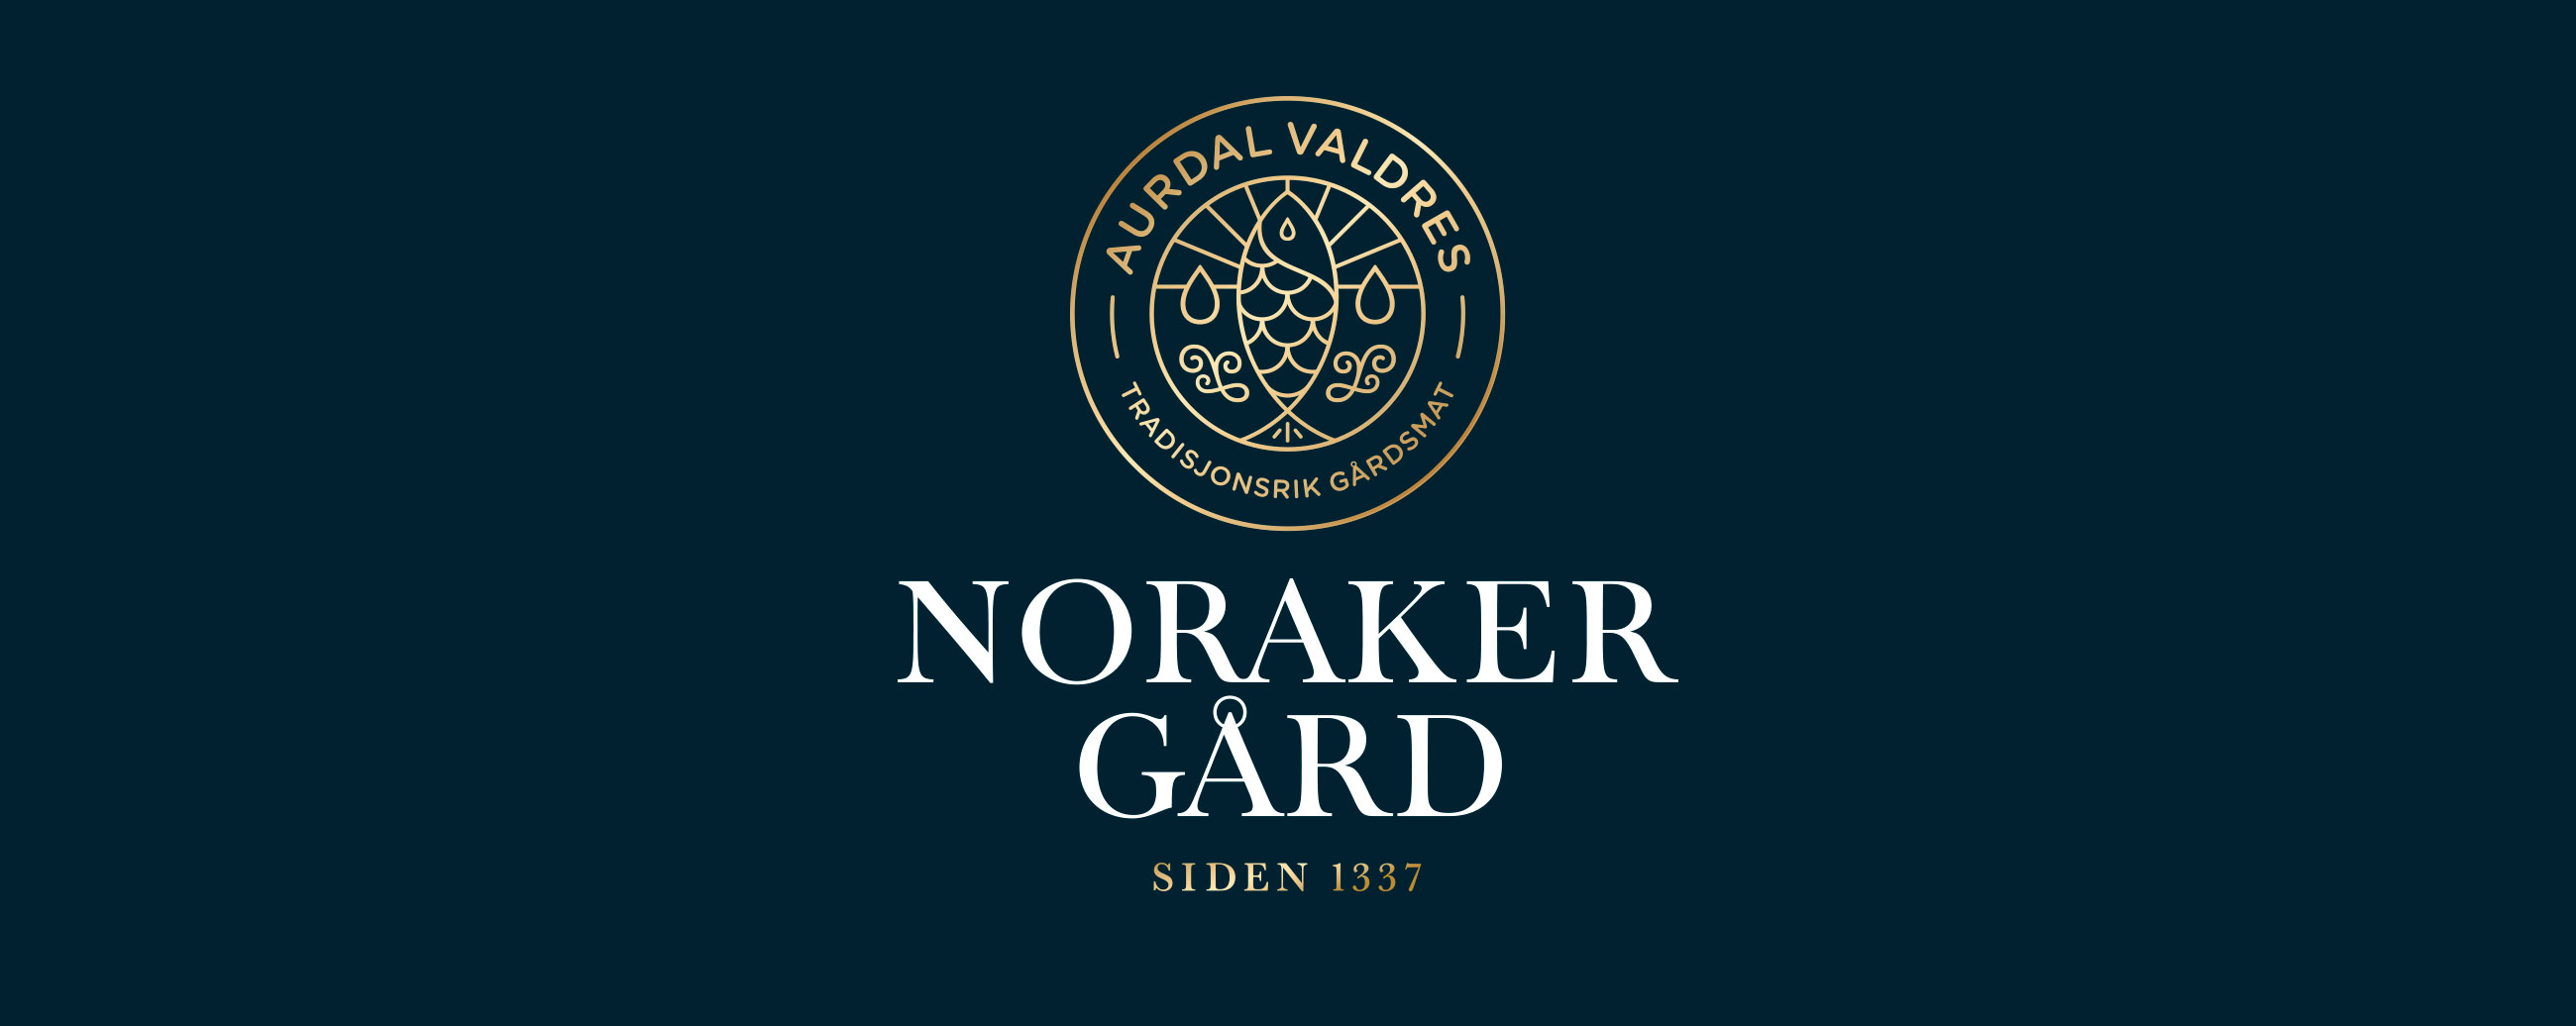 Noraker gård rakfisk logo. Visuell identitet visual identity.